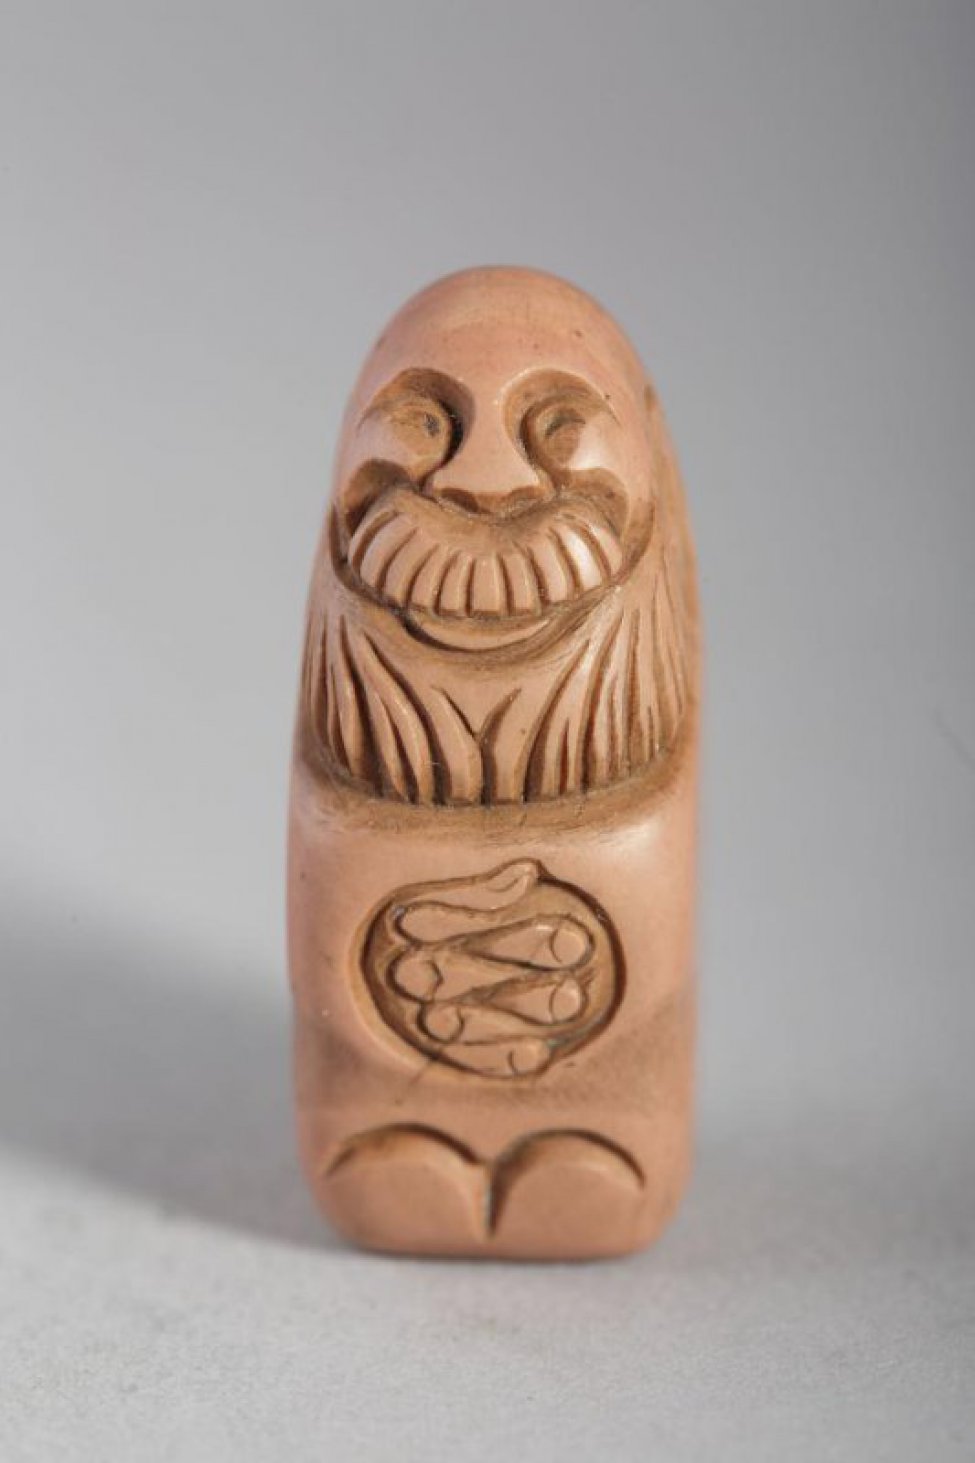 В форме прямоугольного блока, обработанного с одной стороны резьбой с изображением в рост бородатого, лысого, улыбающегося старца со сложенными на груди руками.